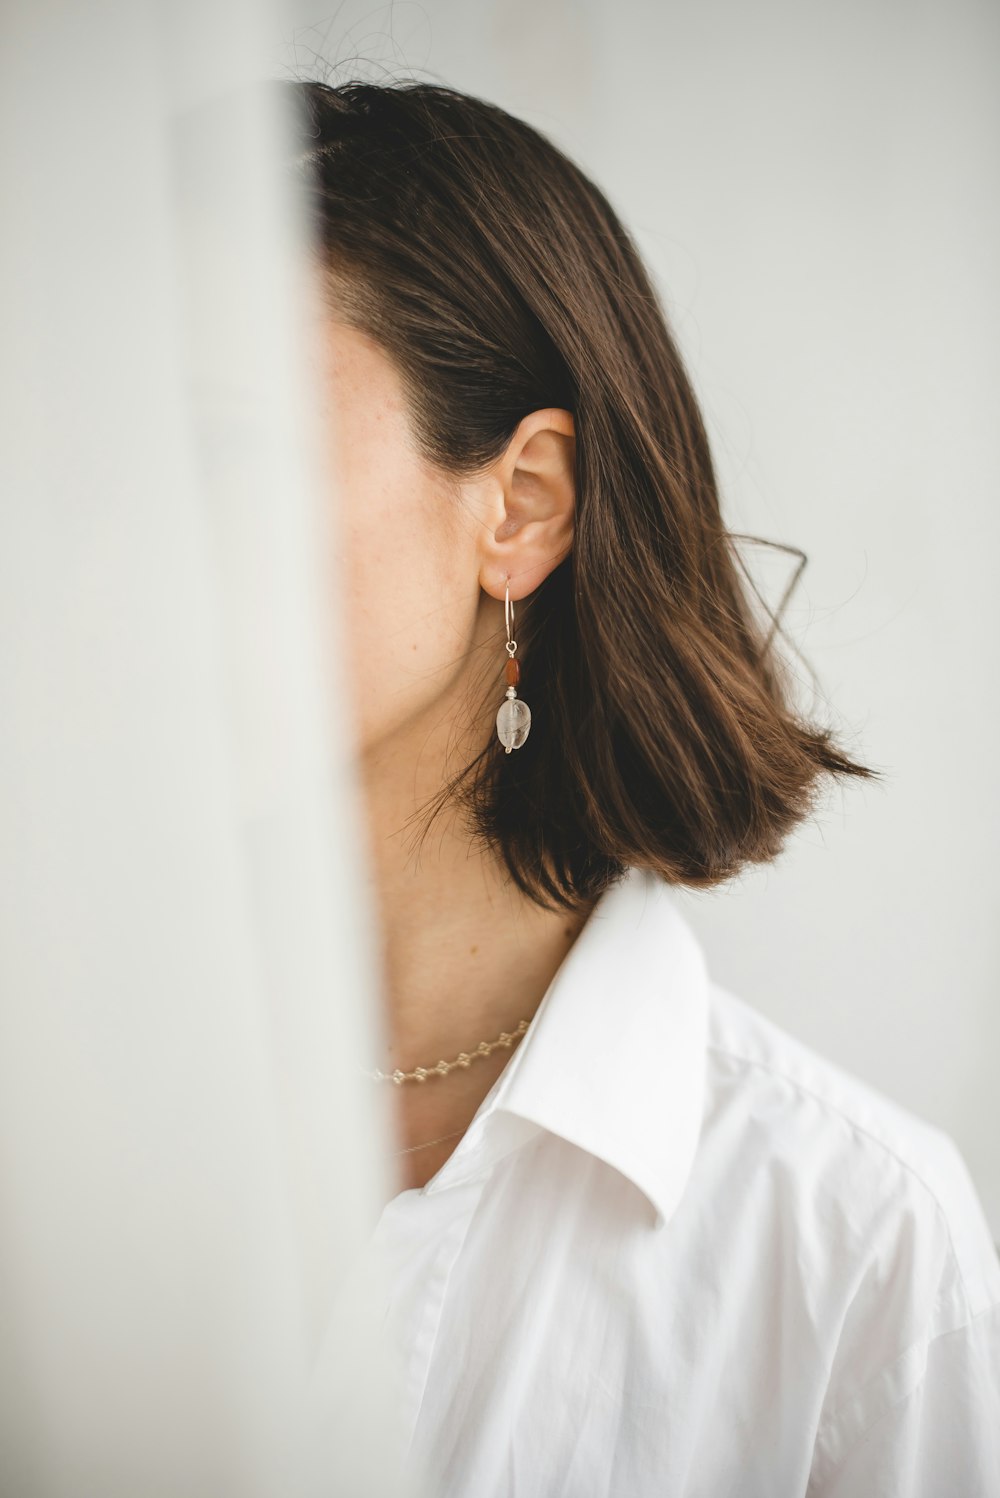 Frau im weißen Hemd mit silbernen Ohrringen